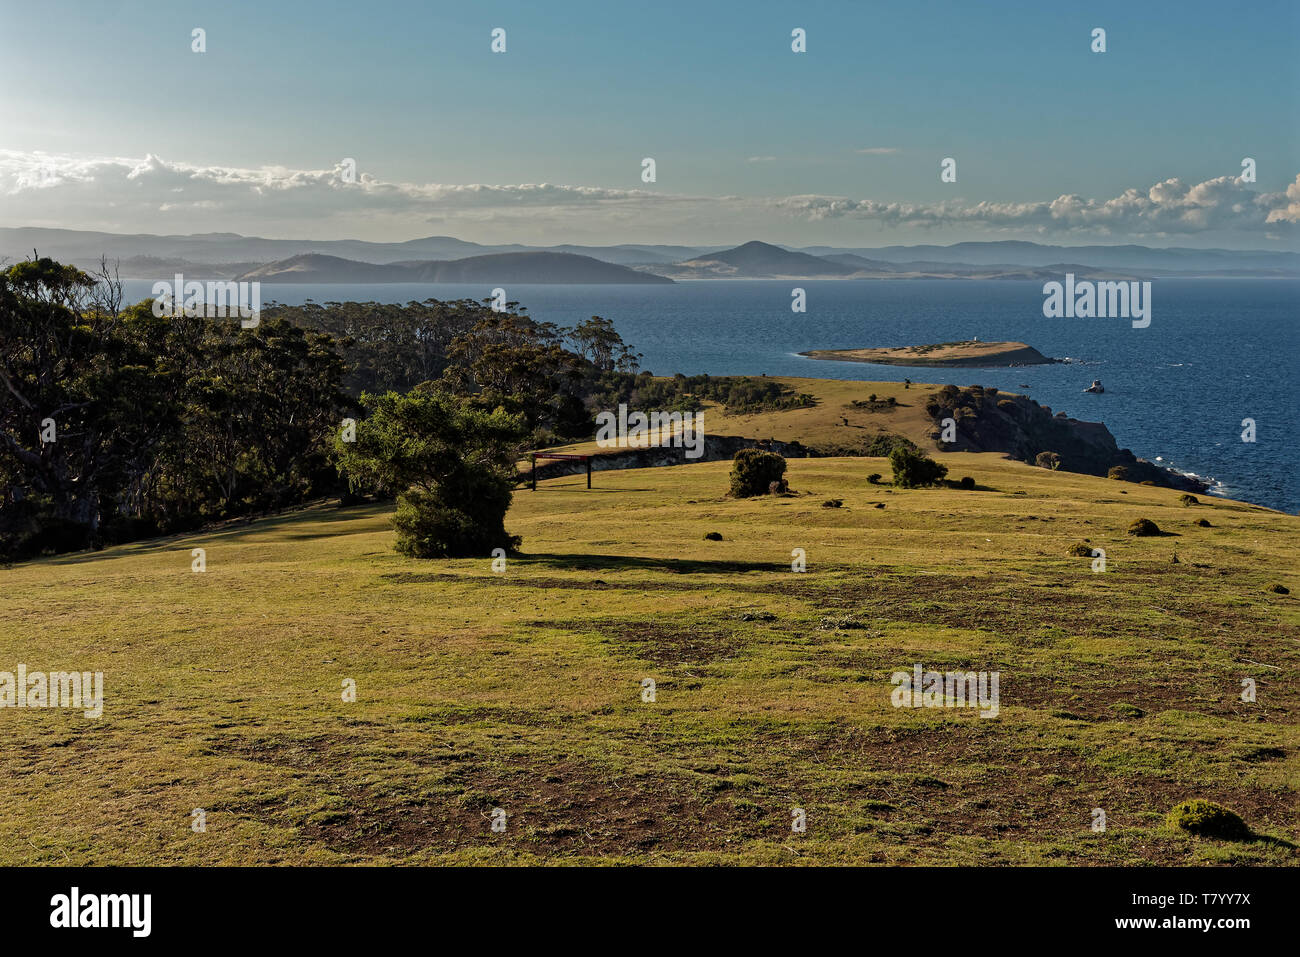 Paesaggio in Maria Island in Tasmania, Prenotazione nazionale in Australia, bellissimo mare e paesaggi costieri. Foto Stock